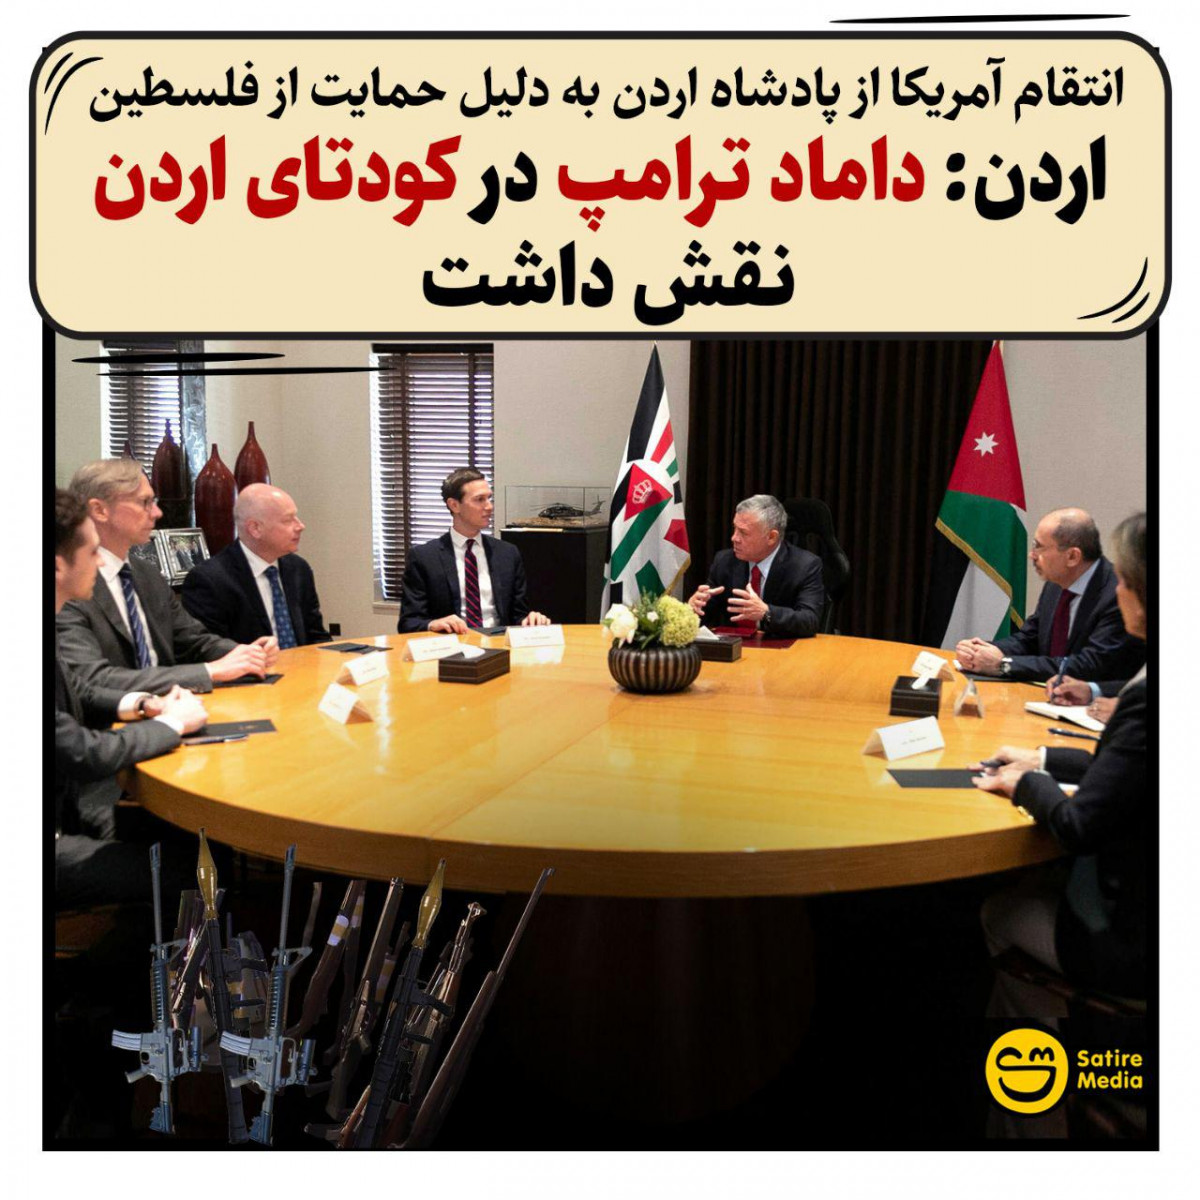 پوستر: انتقام آمریکا از پادشاه اردن به دلیل حمایت از فلسطین